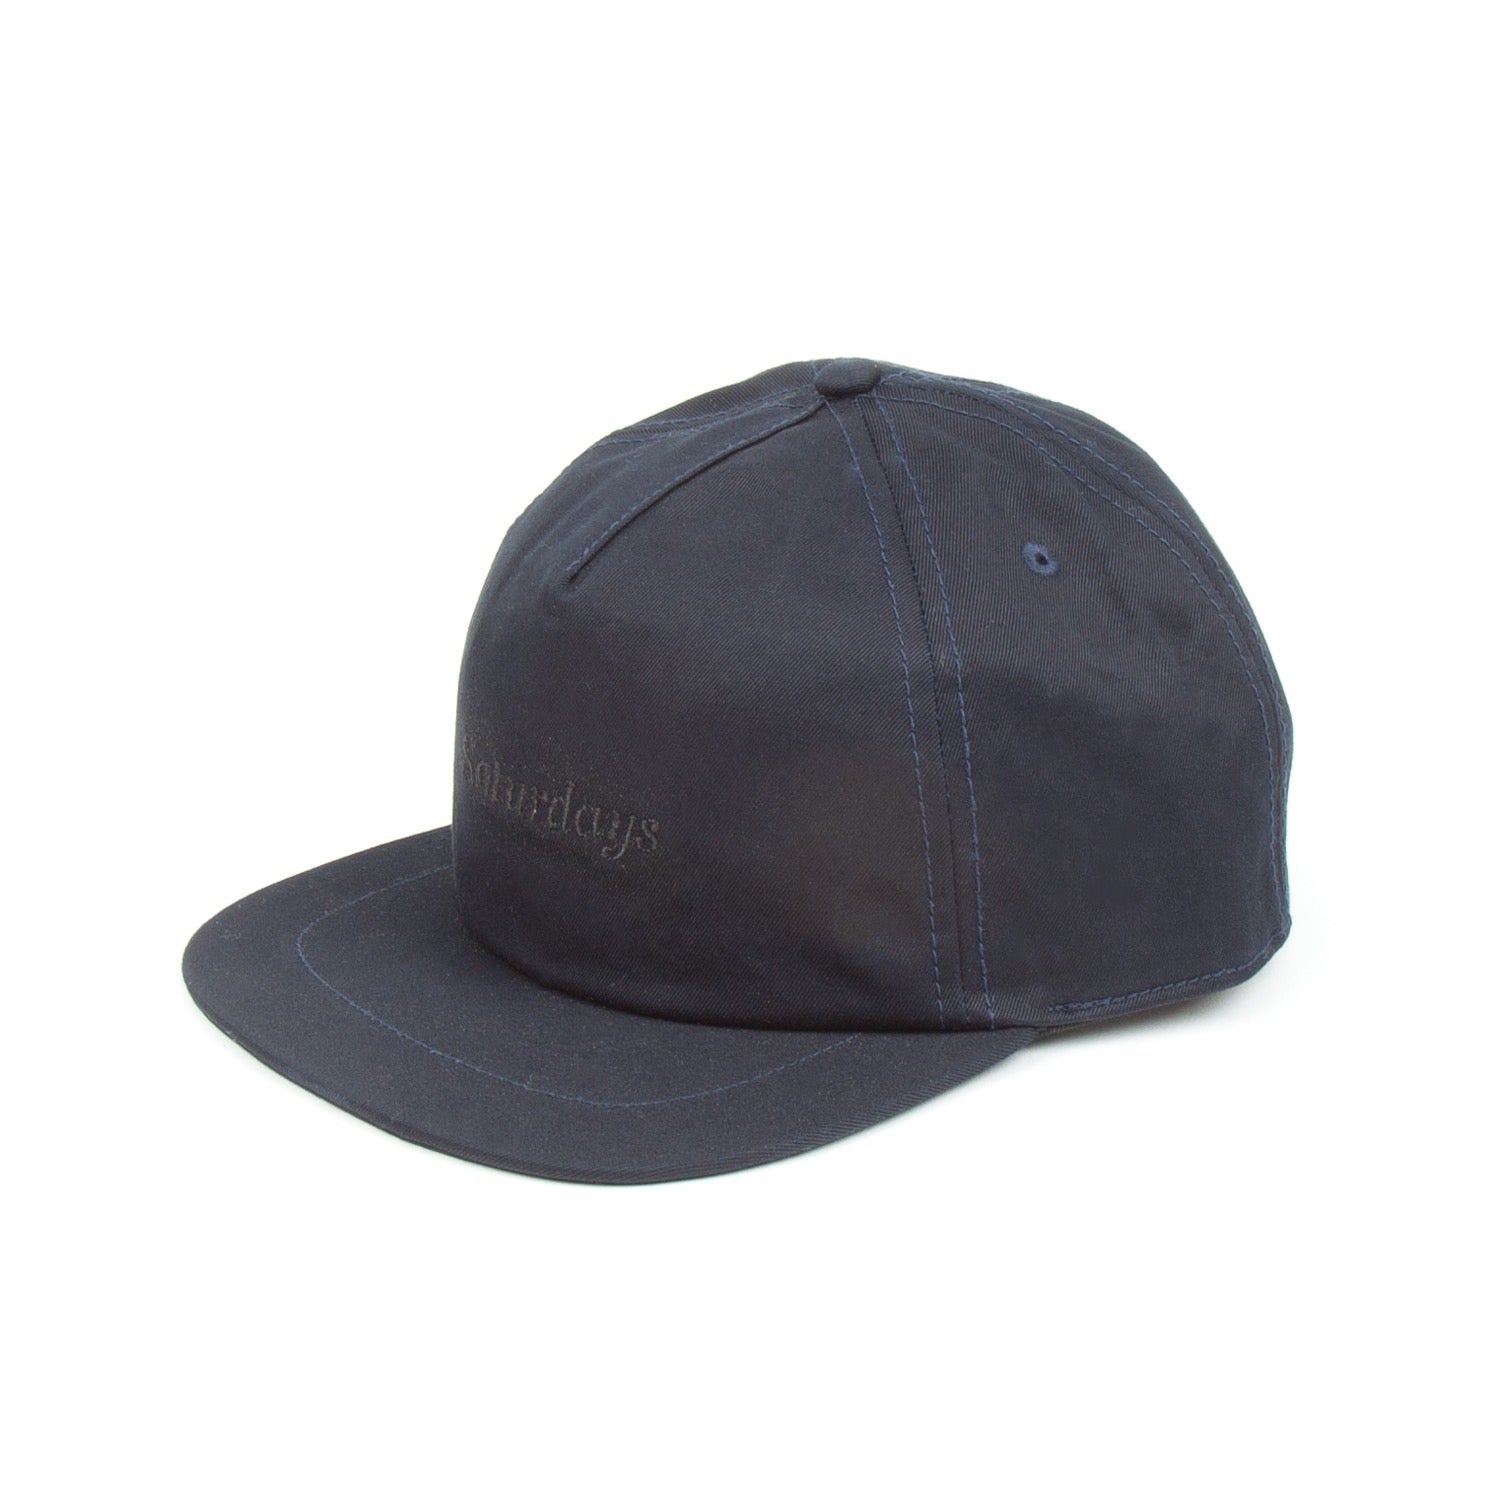 Hats & Caps for Men | Headwear